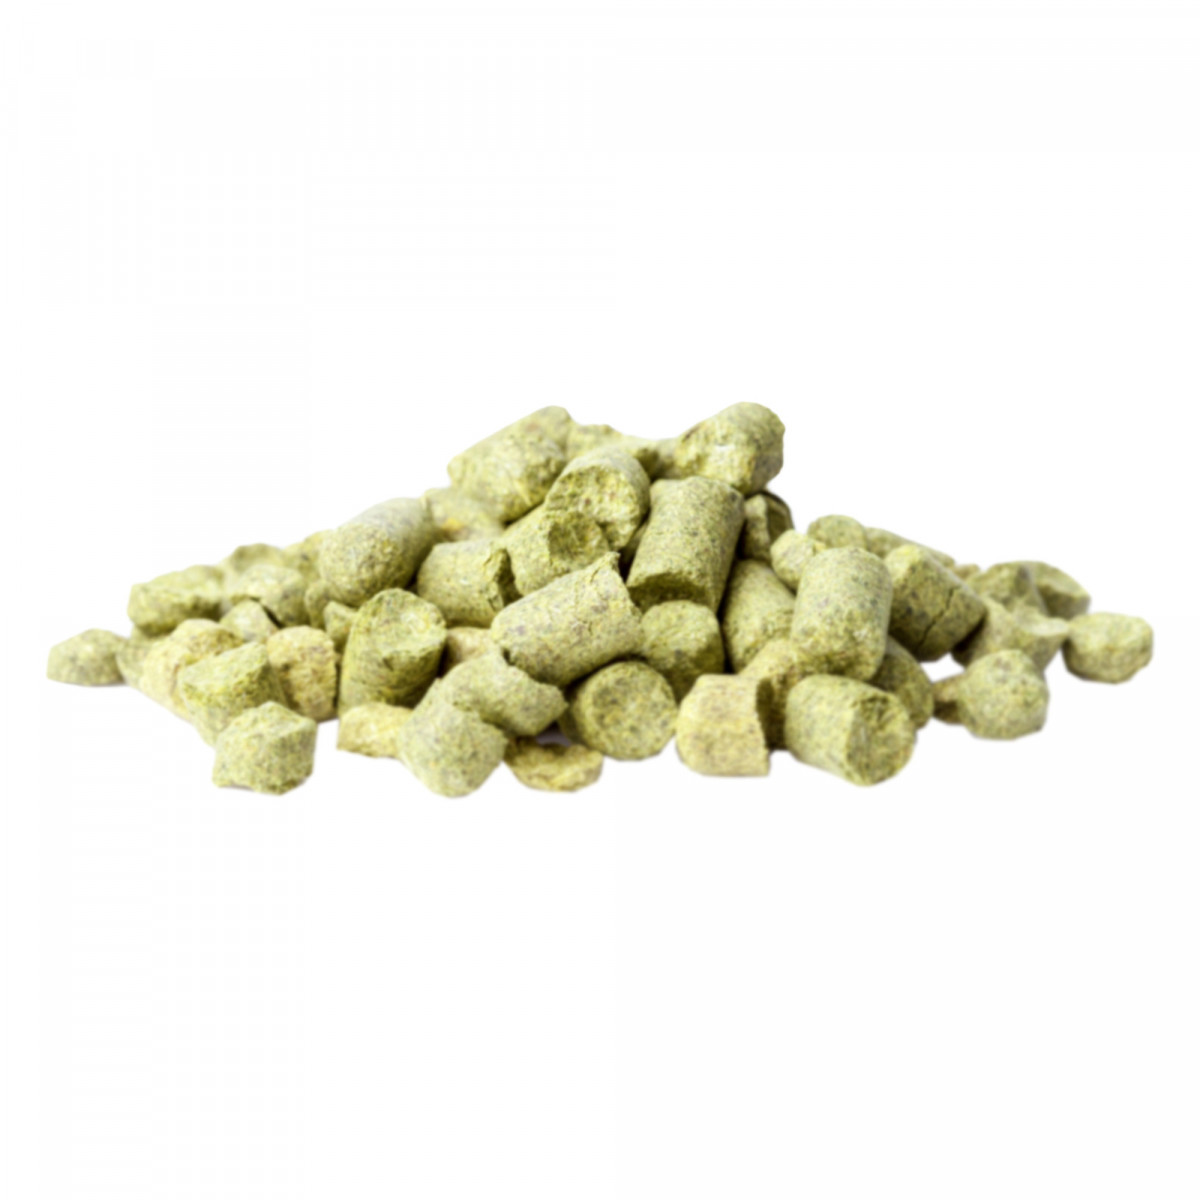 Yakima Chief Hops® Ekuanot® T90 Houblon en pellets - 1 kg